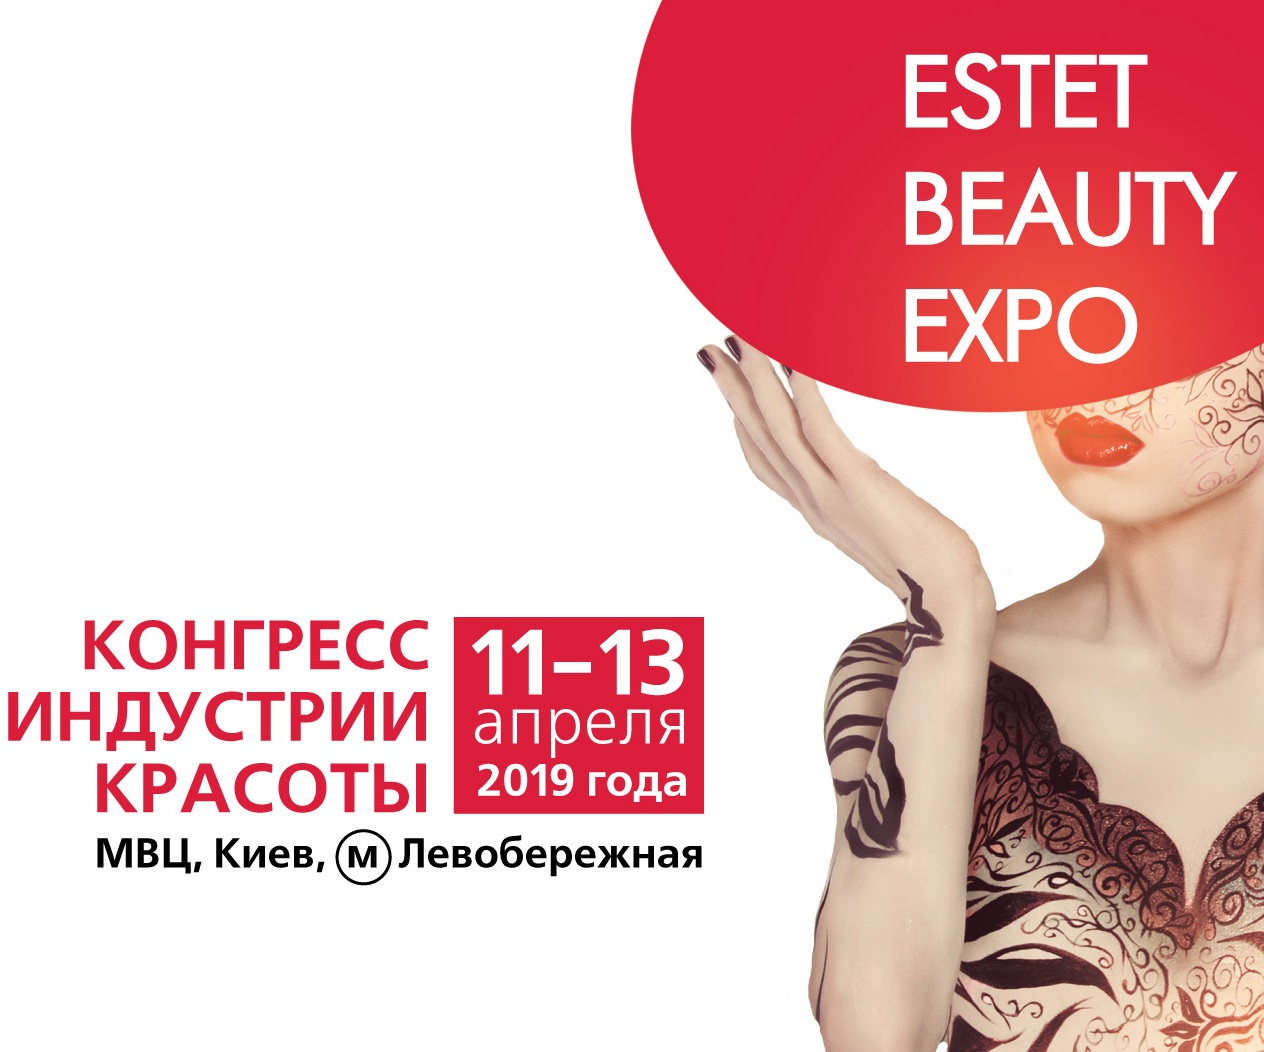 Участь у виставці Estet Beauty Expo 2019